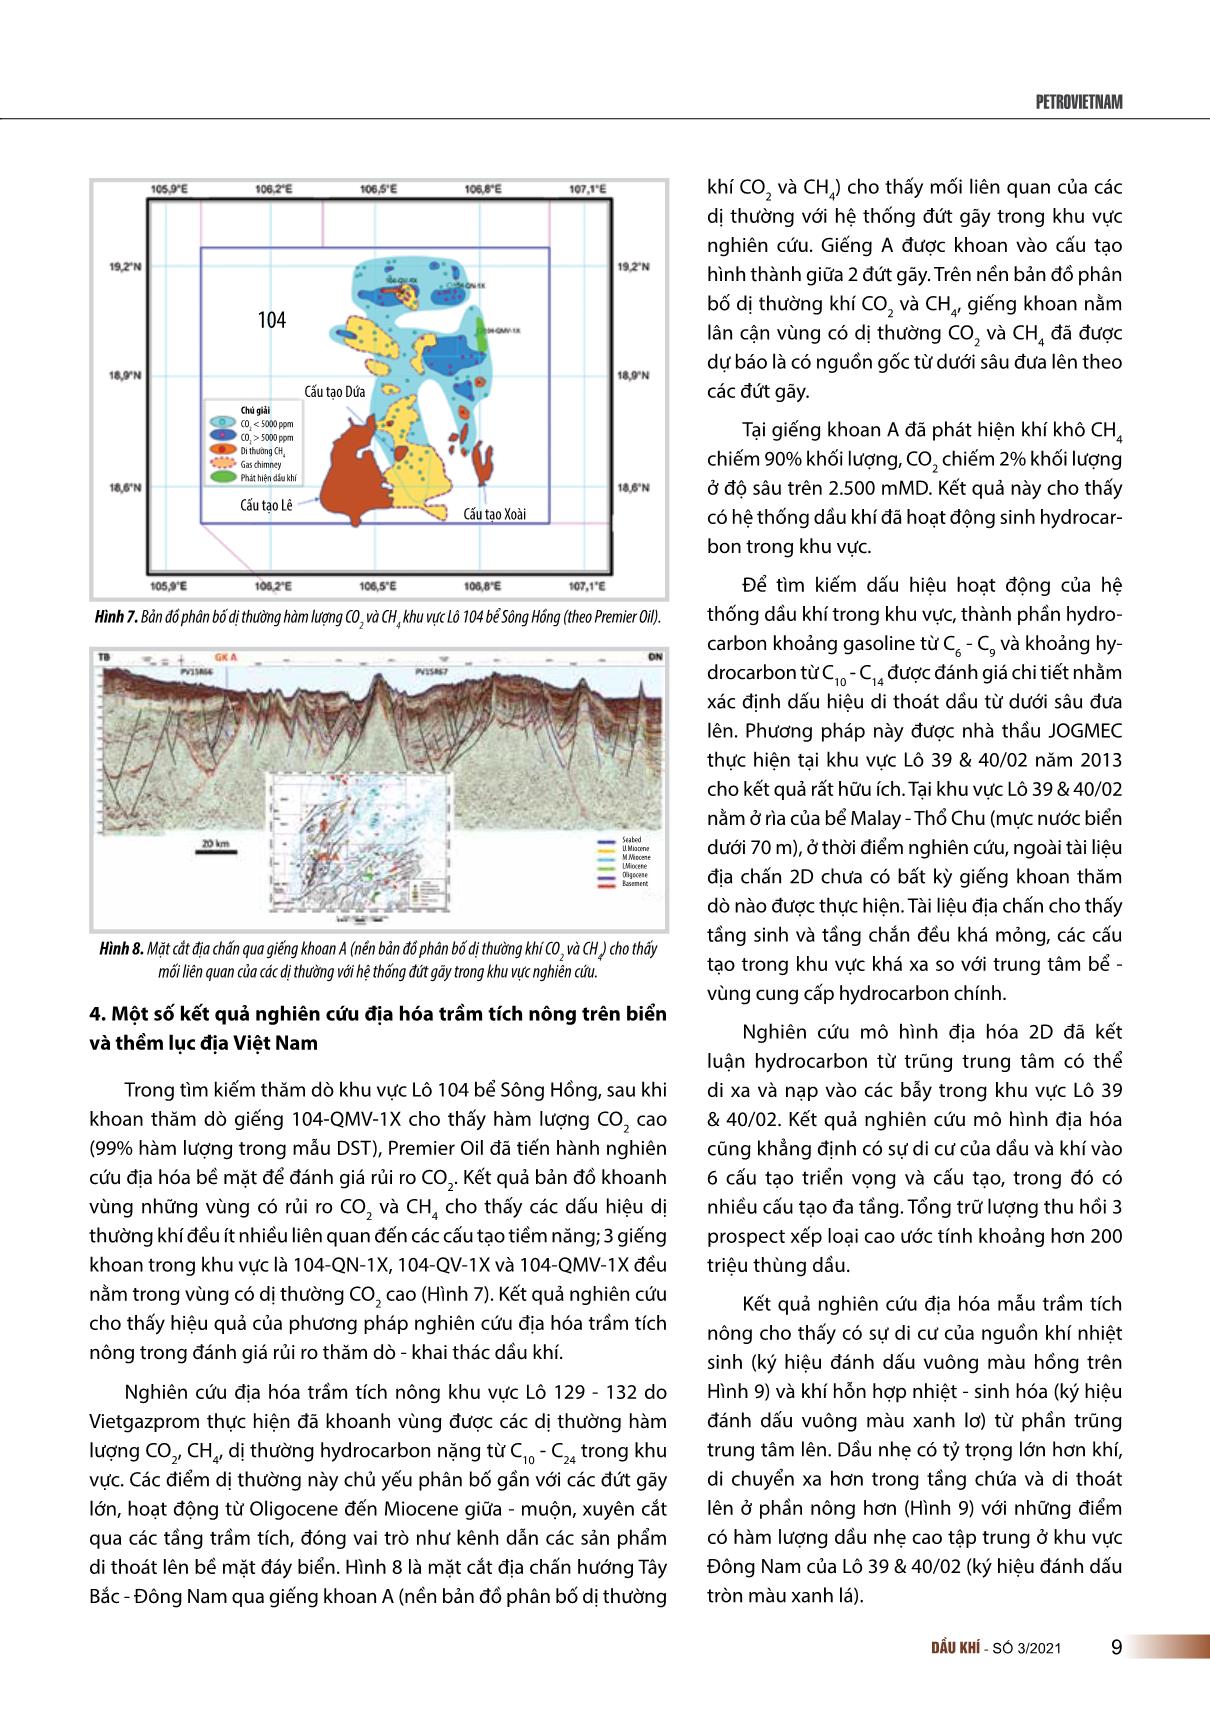 Ứng dụng nghiên cứu địa hóa trầm tích nông trong tìm kiếm thăm dò dầu khí trên biển và thềm lục địa Việt Nam trang 6